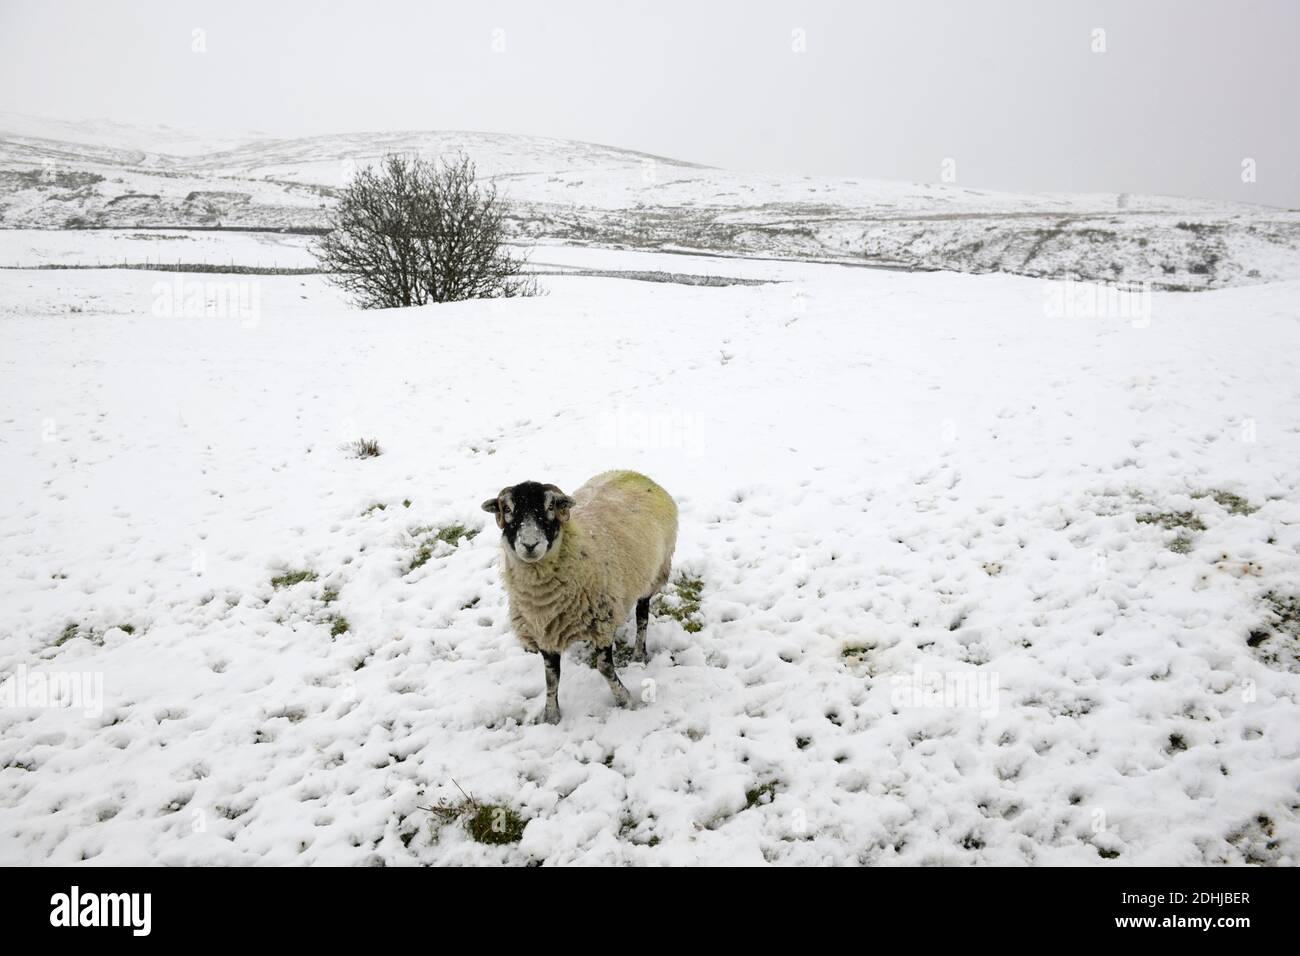 La photo est une scène neigeuse dans les Yorkshire Dales au-dessus de Hawes. Météo neige hiver neige neige neige neige neige neige Banque D'Images